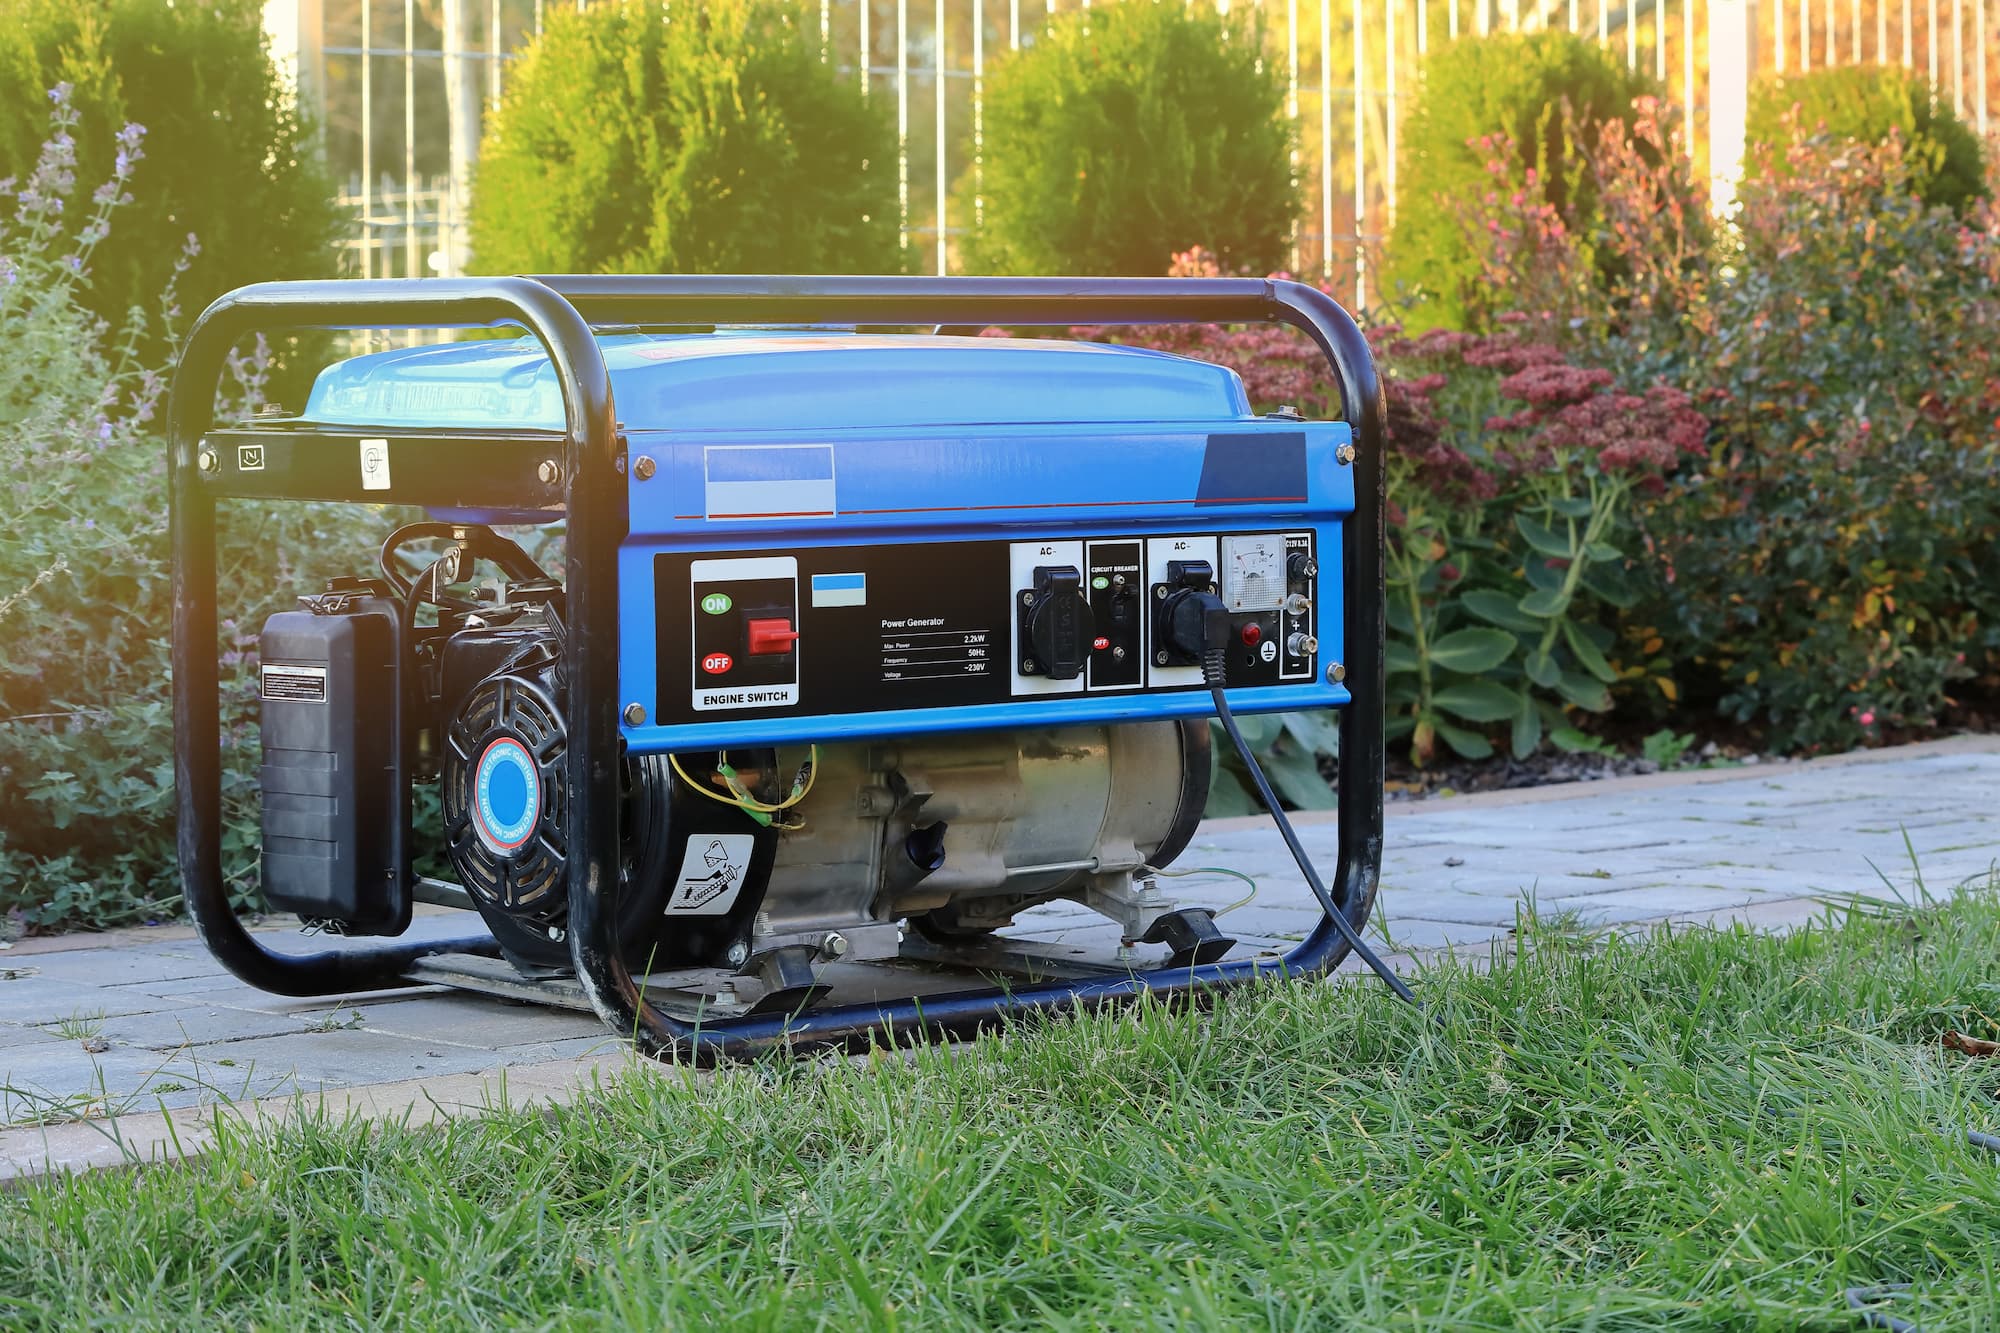 a generator sitting on a lawn